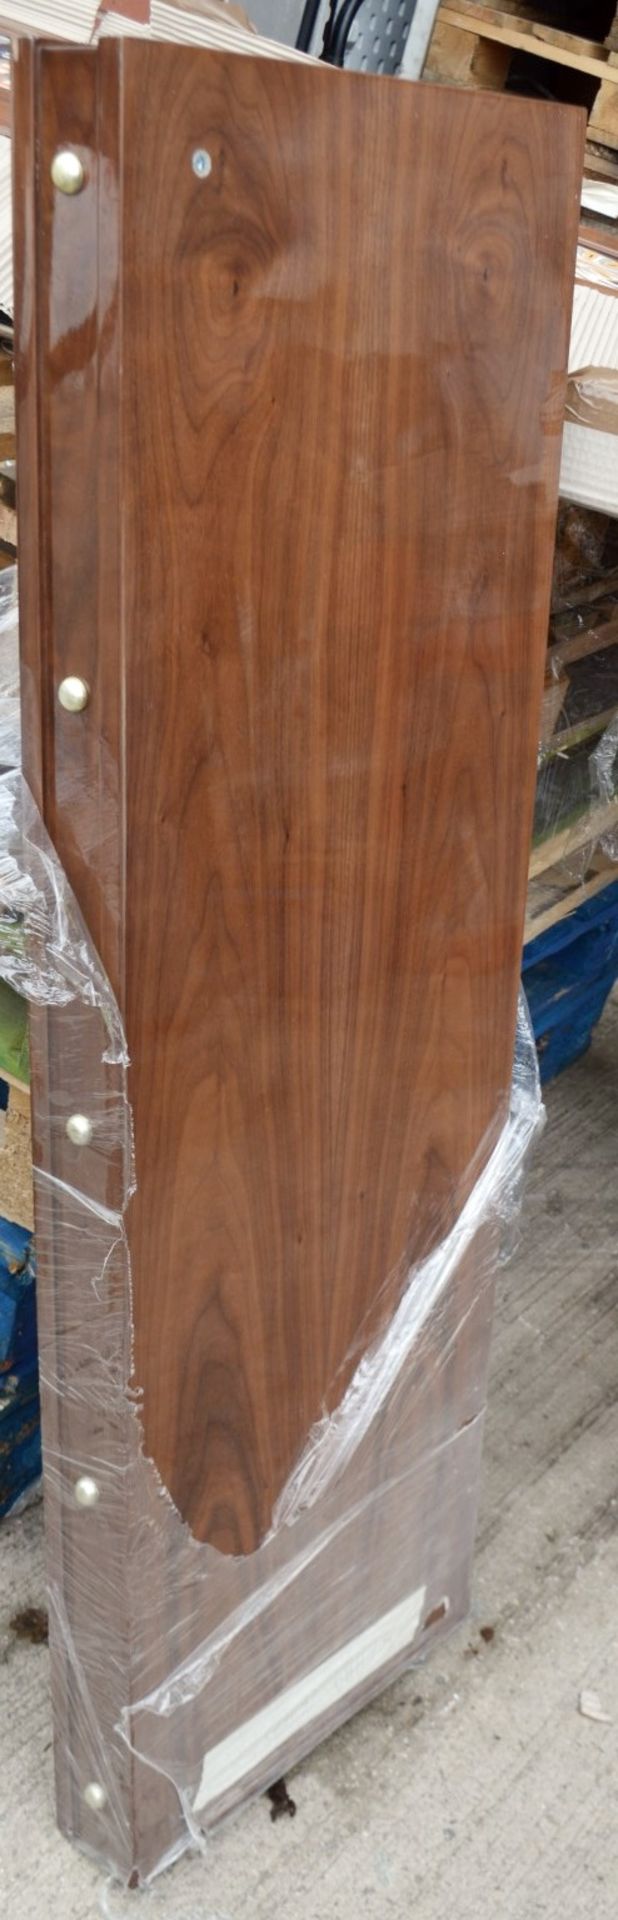 1 x JUSTIN VAN BREDA 'Grace' 2.5 Metre 4-Door Dresser With Inlaid Artwork - Original Price £6,359 - Image 3 of 19